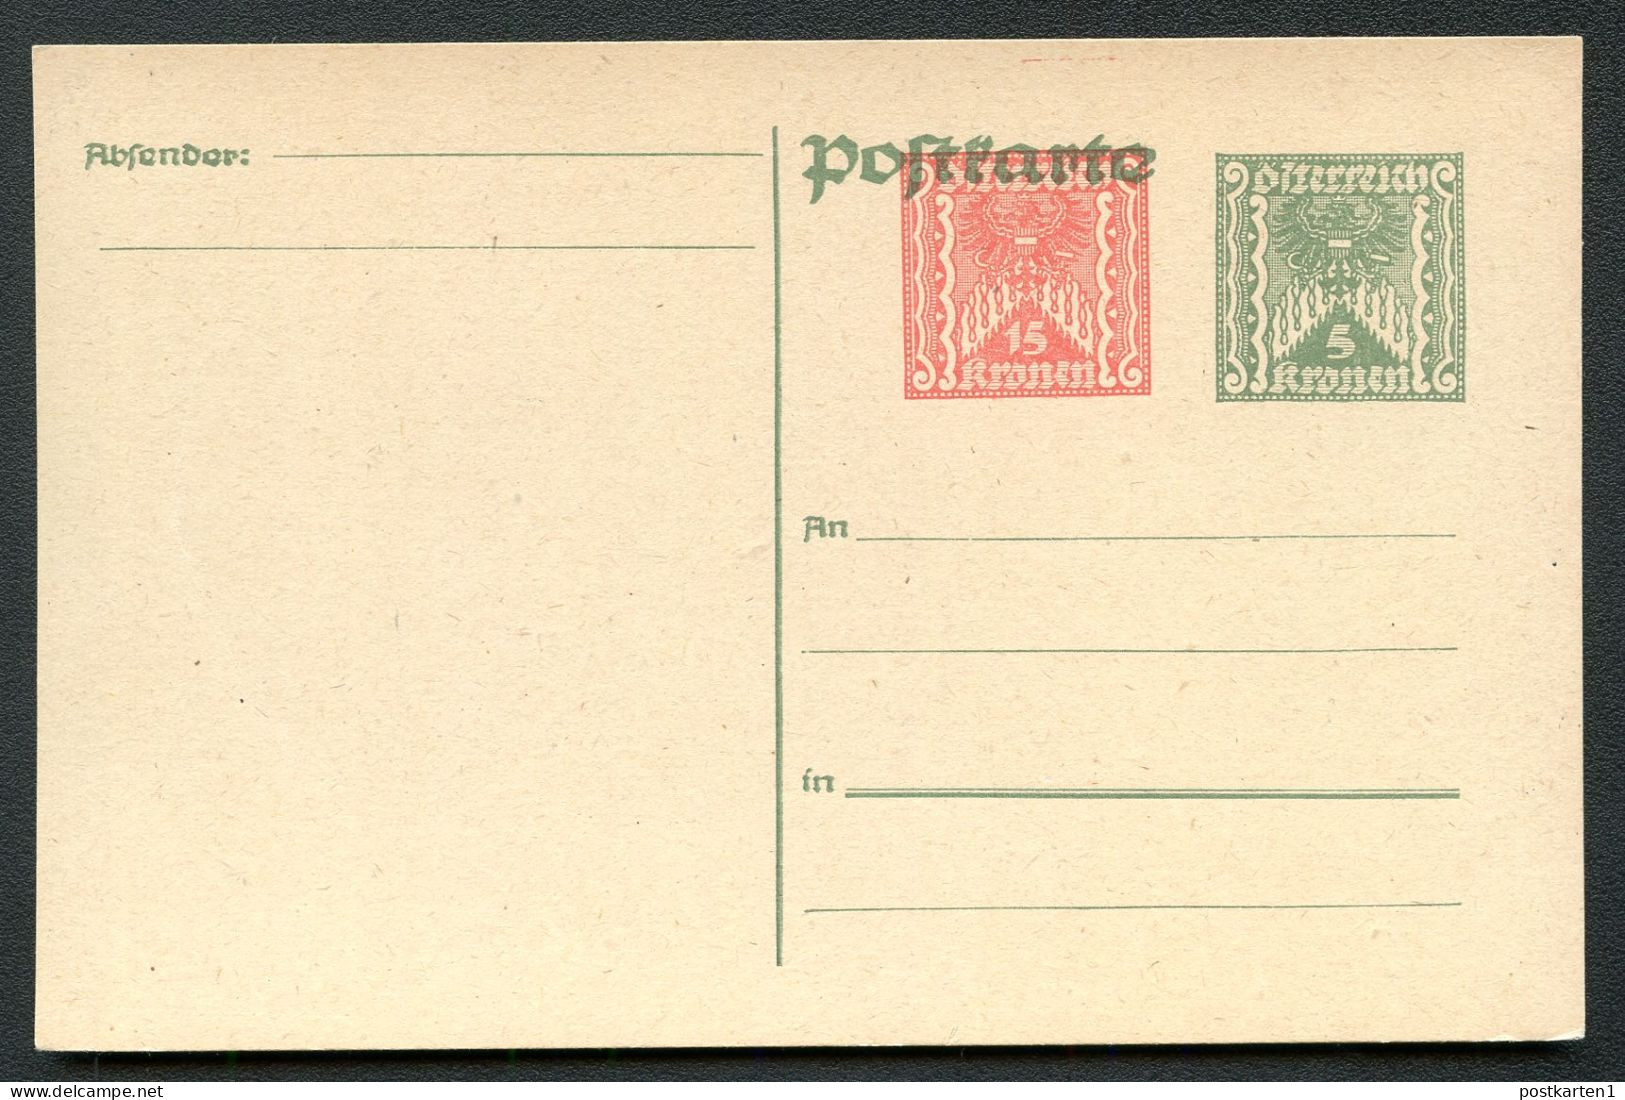 PRIVATER WERTZUDRUCK Postkarte PZP 240 Postfrisch Feinst 1922 - Cartes Postales